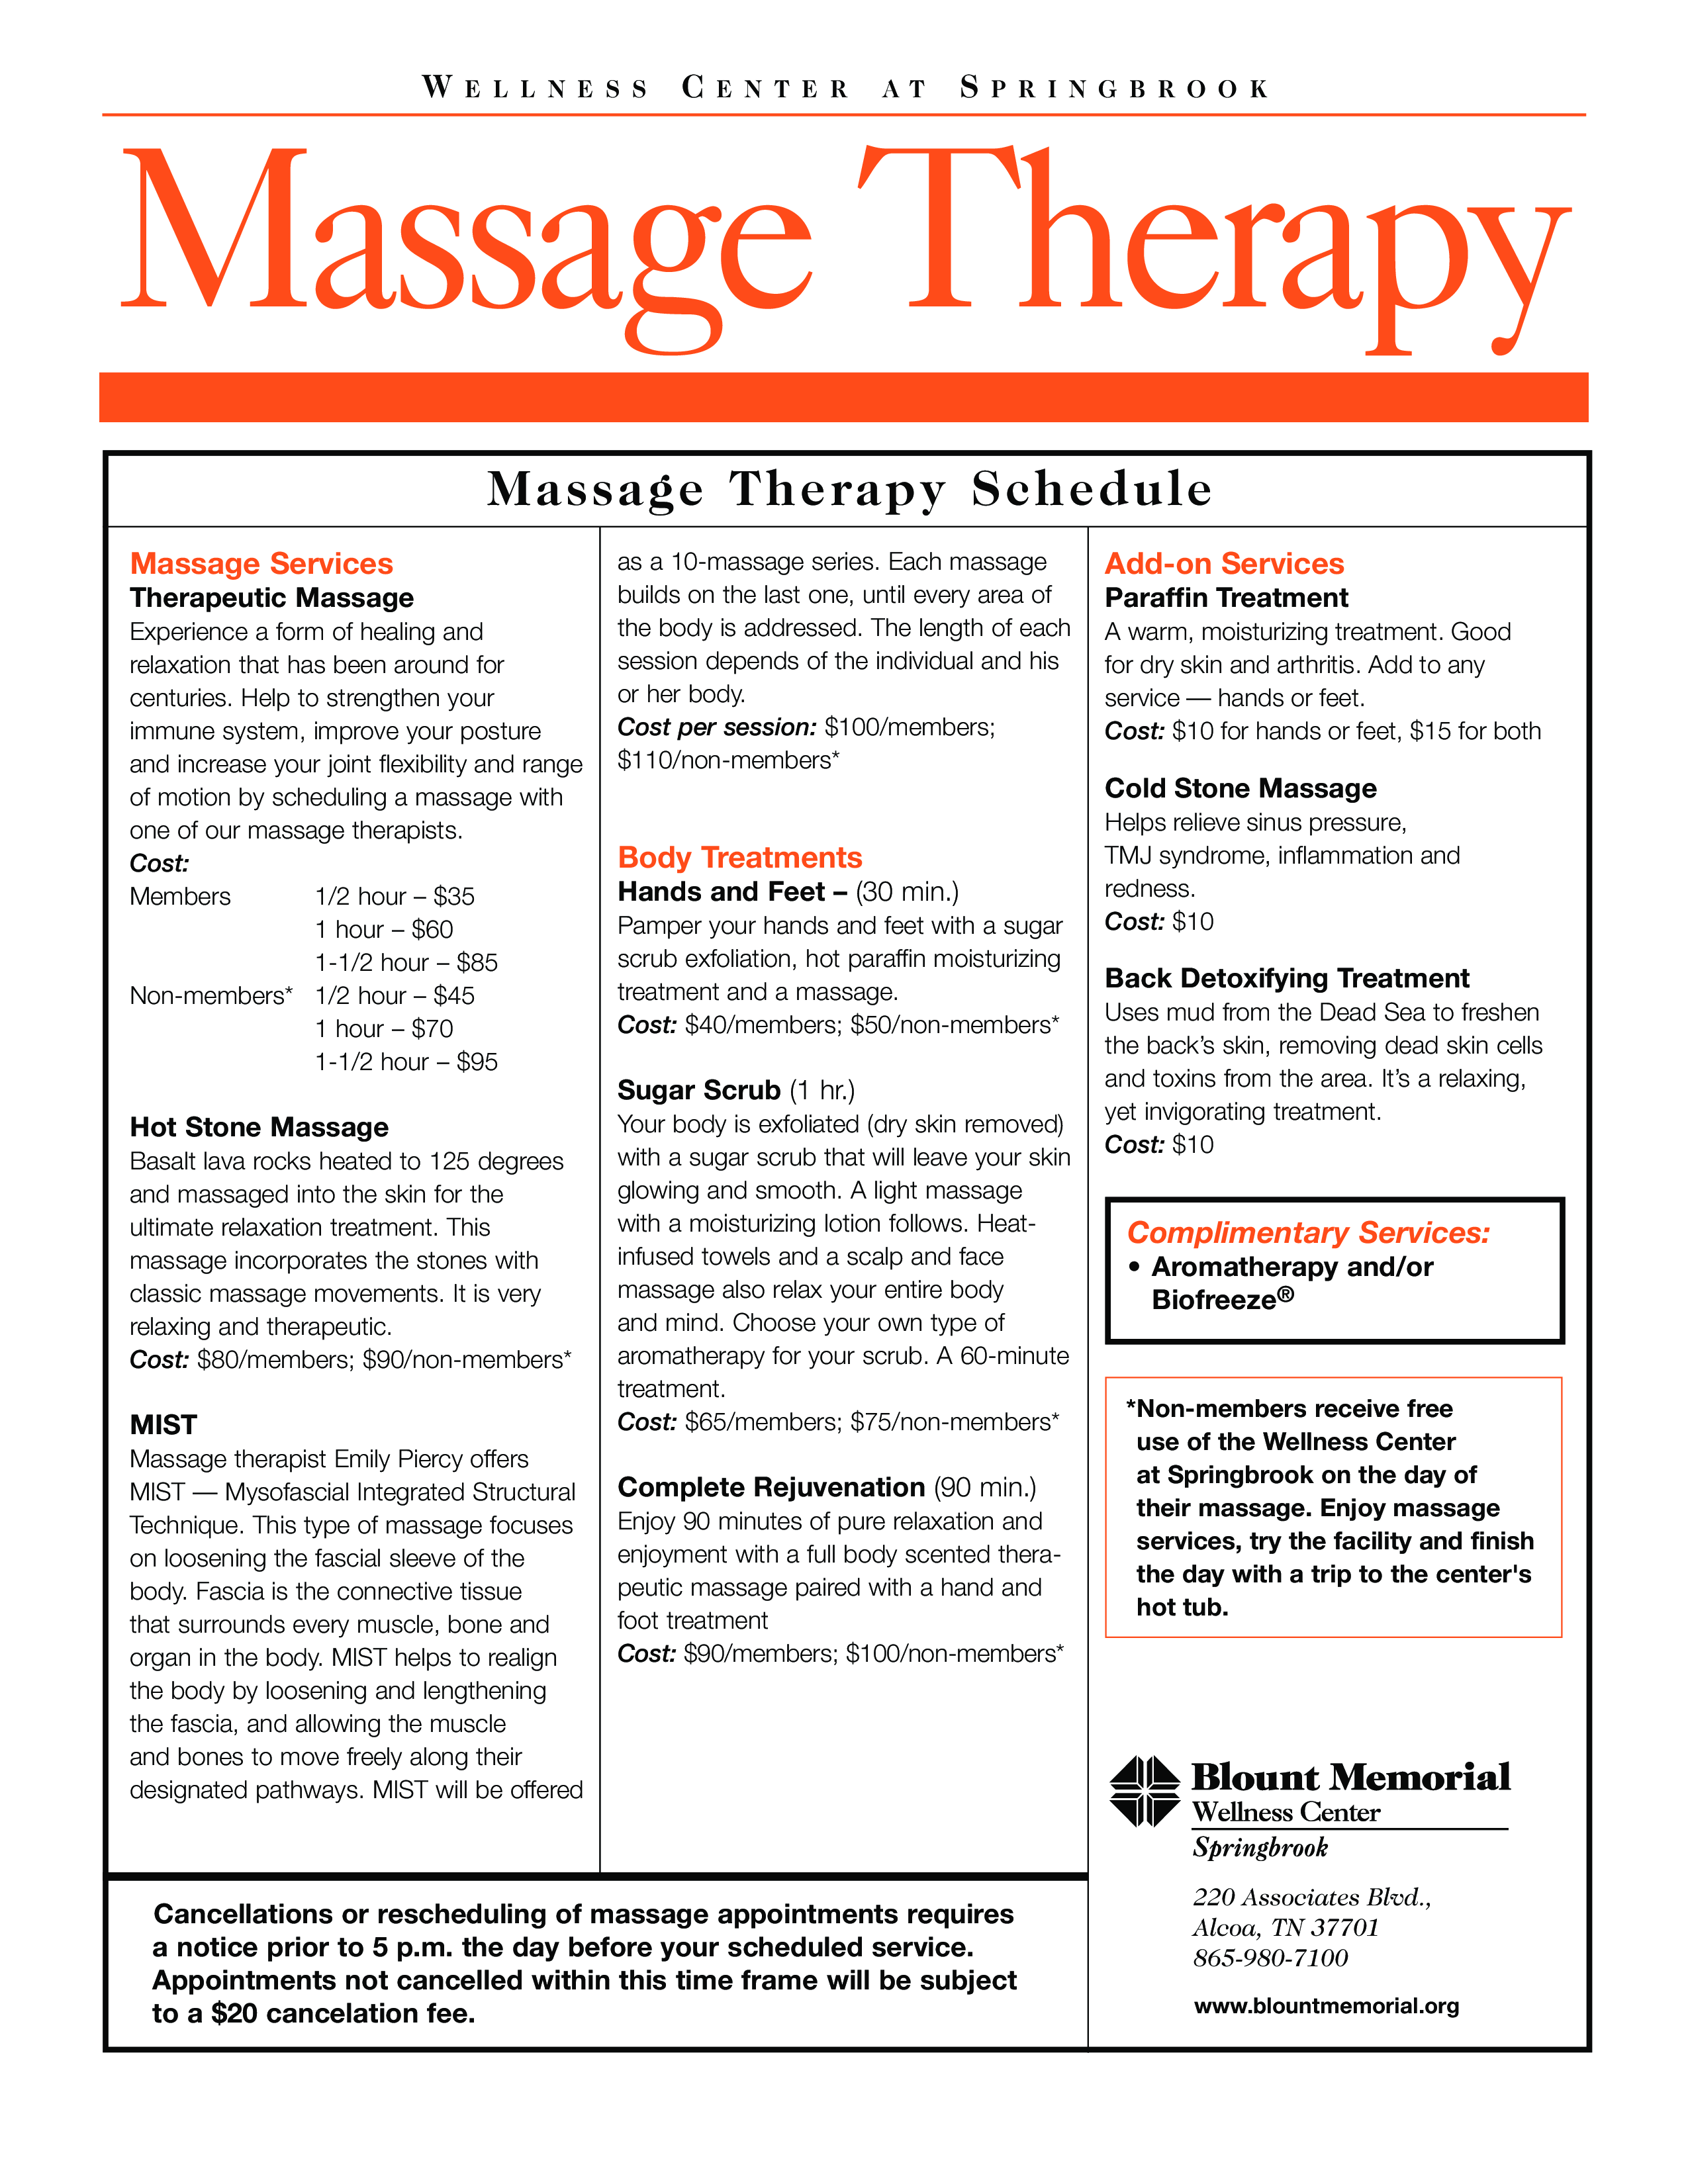 massage therapy schedule plantilla imagen principal